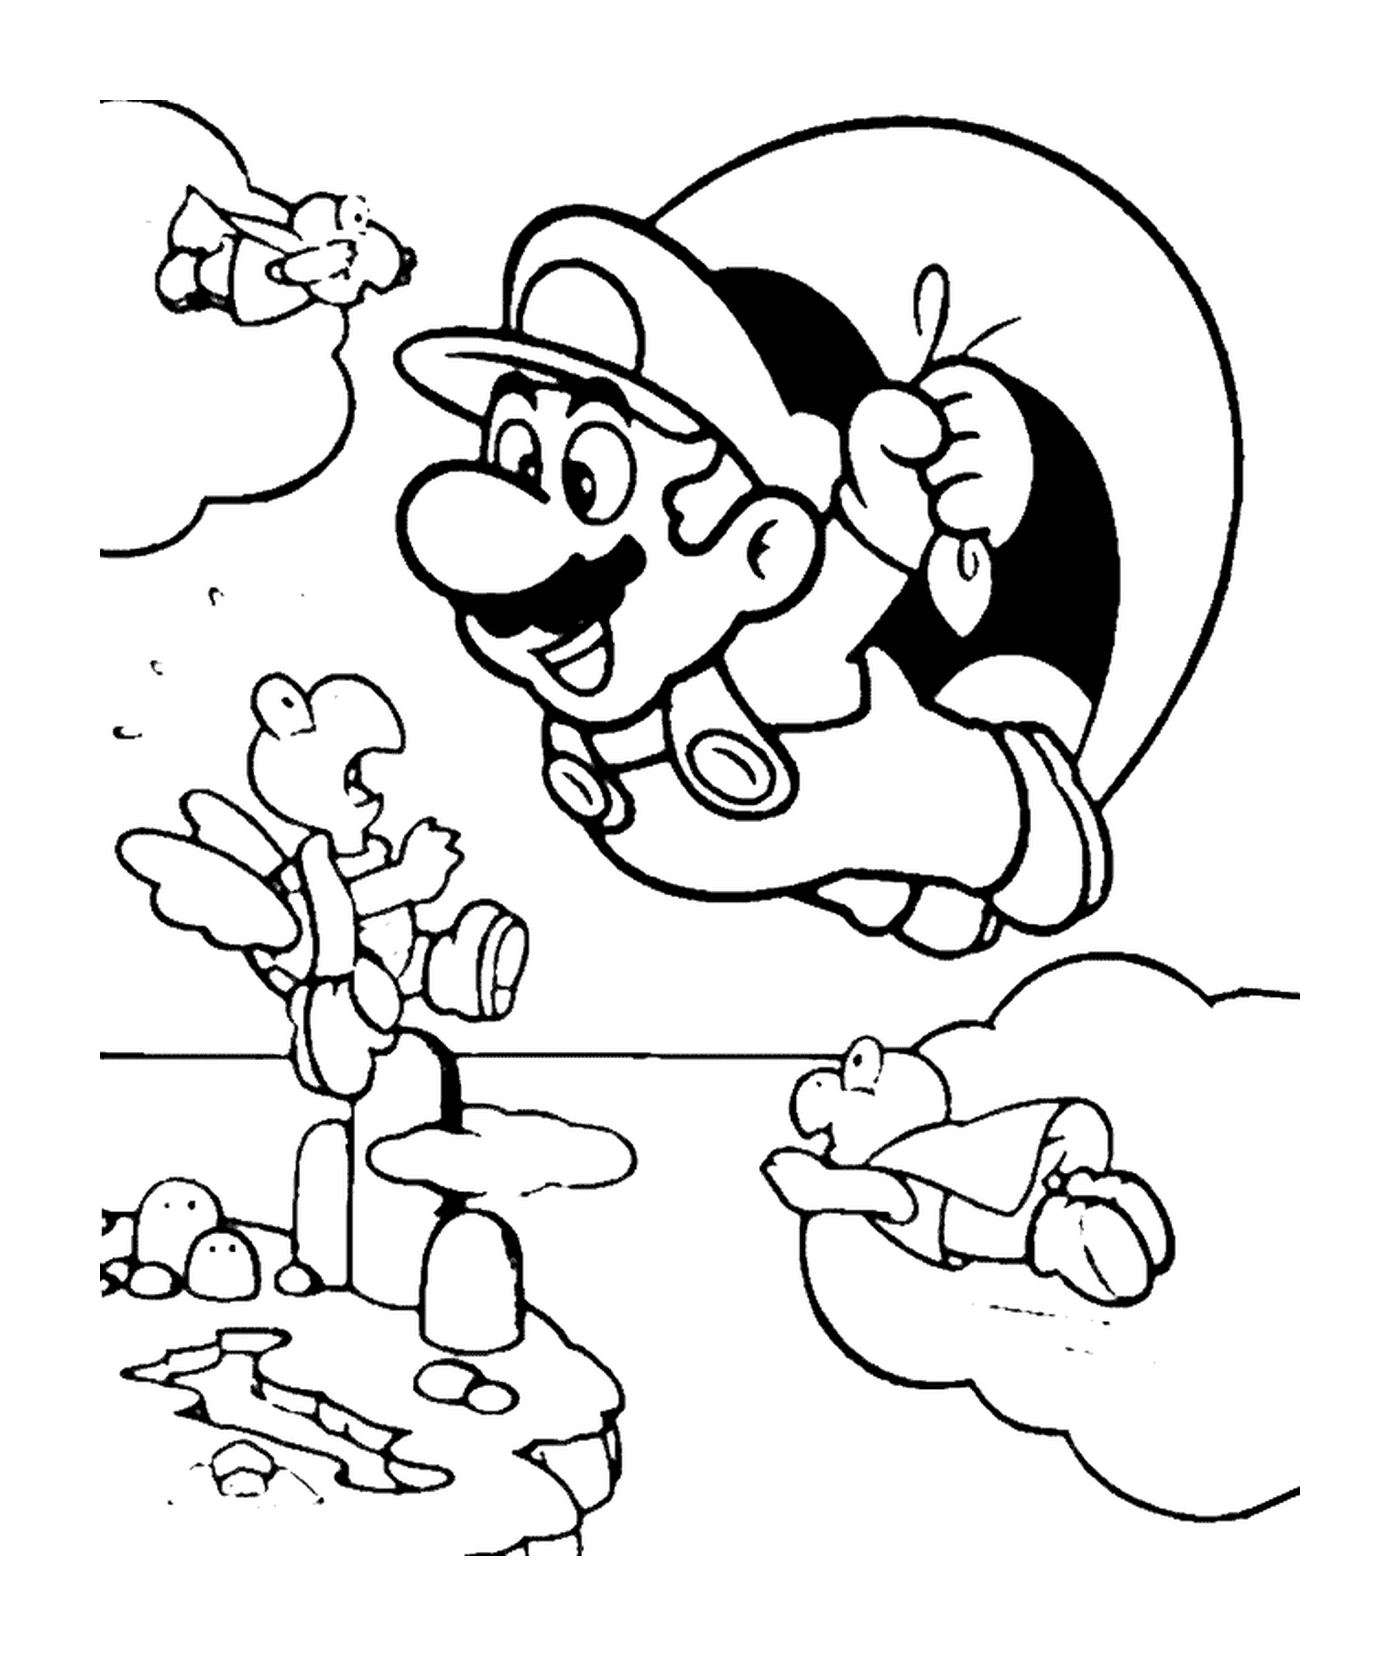  Mario voa com um pára-quedas 